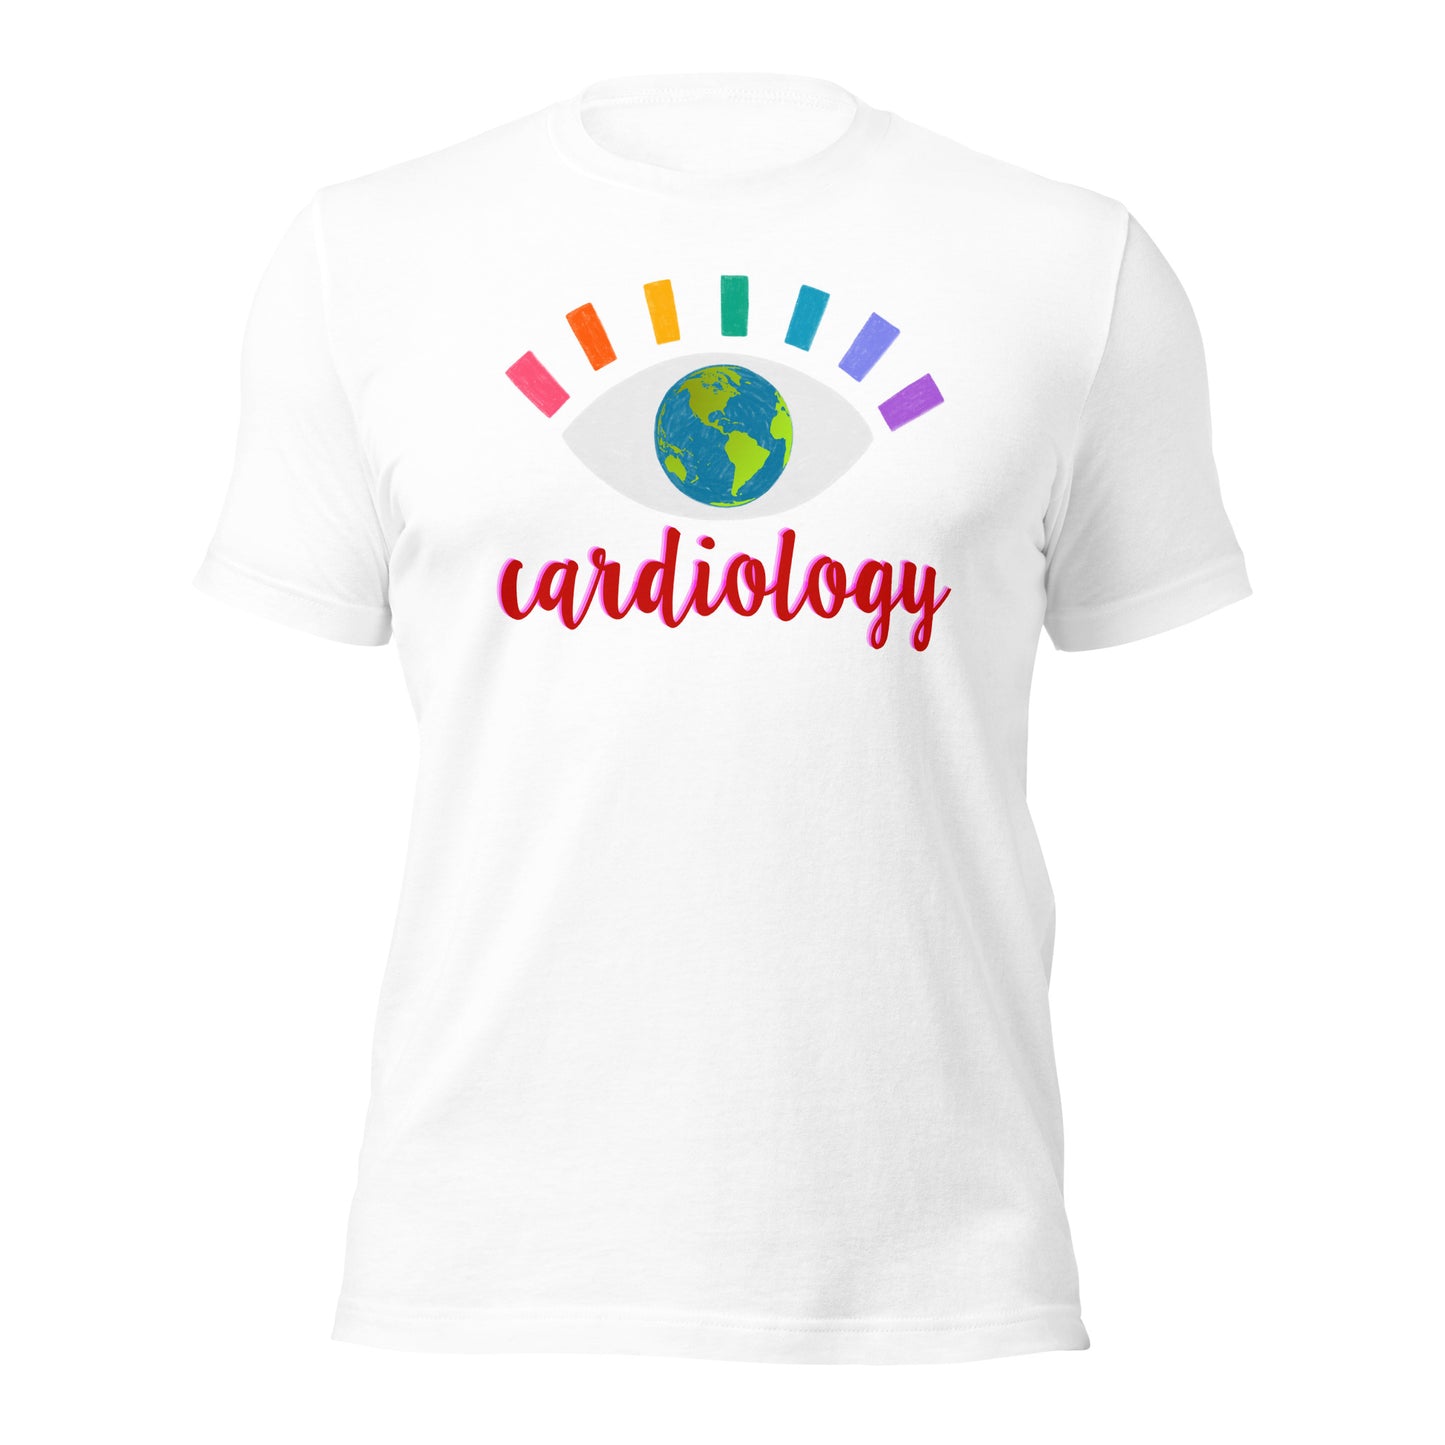 CARDIOLOGY Unisex t-shirt